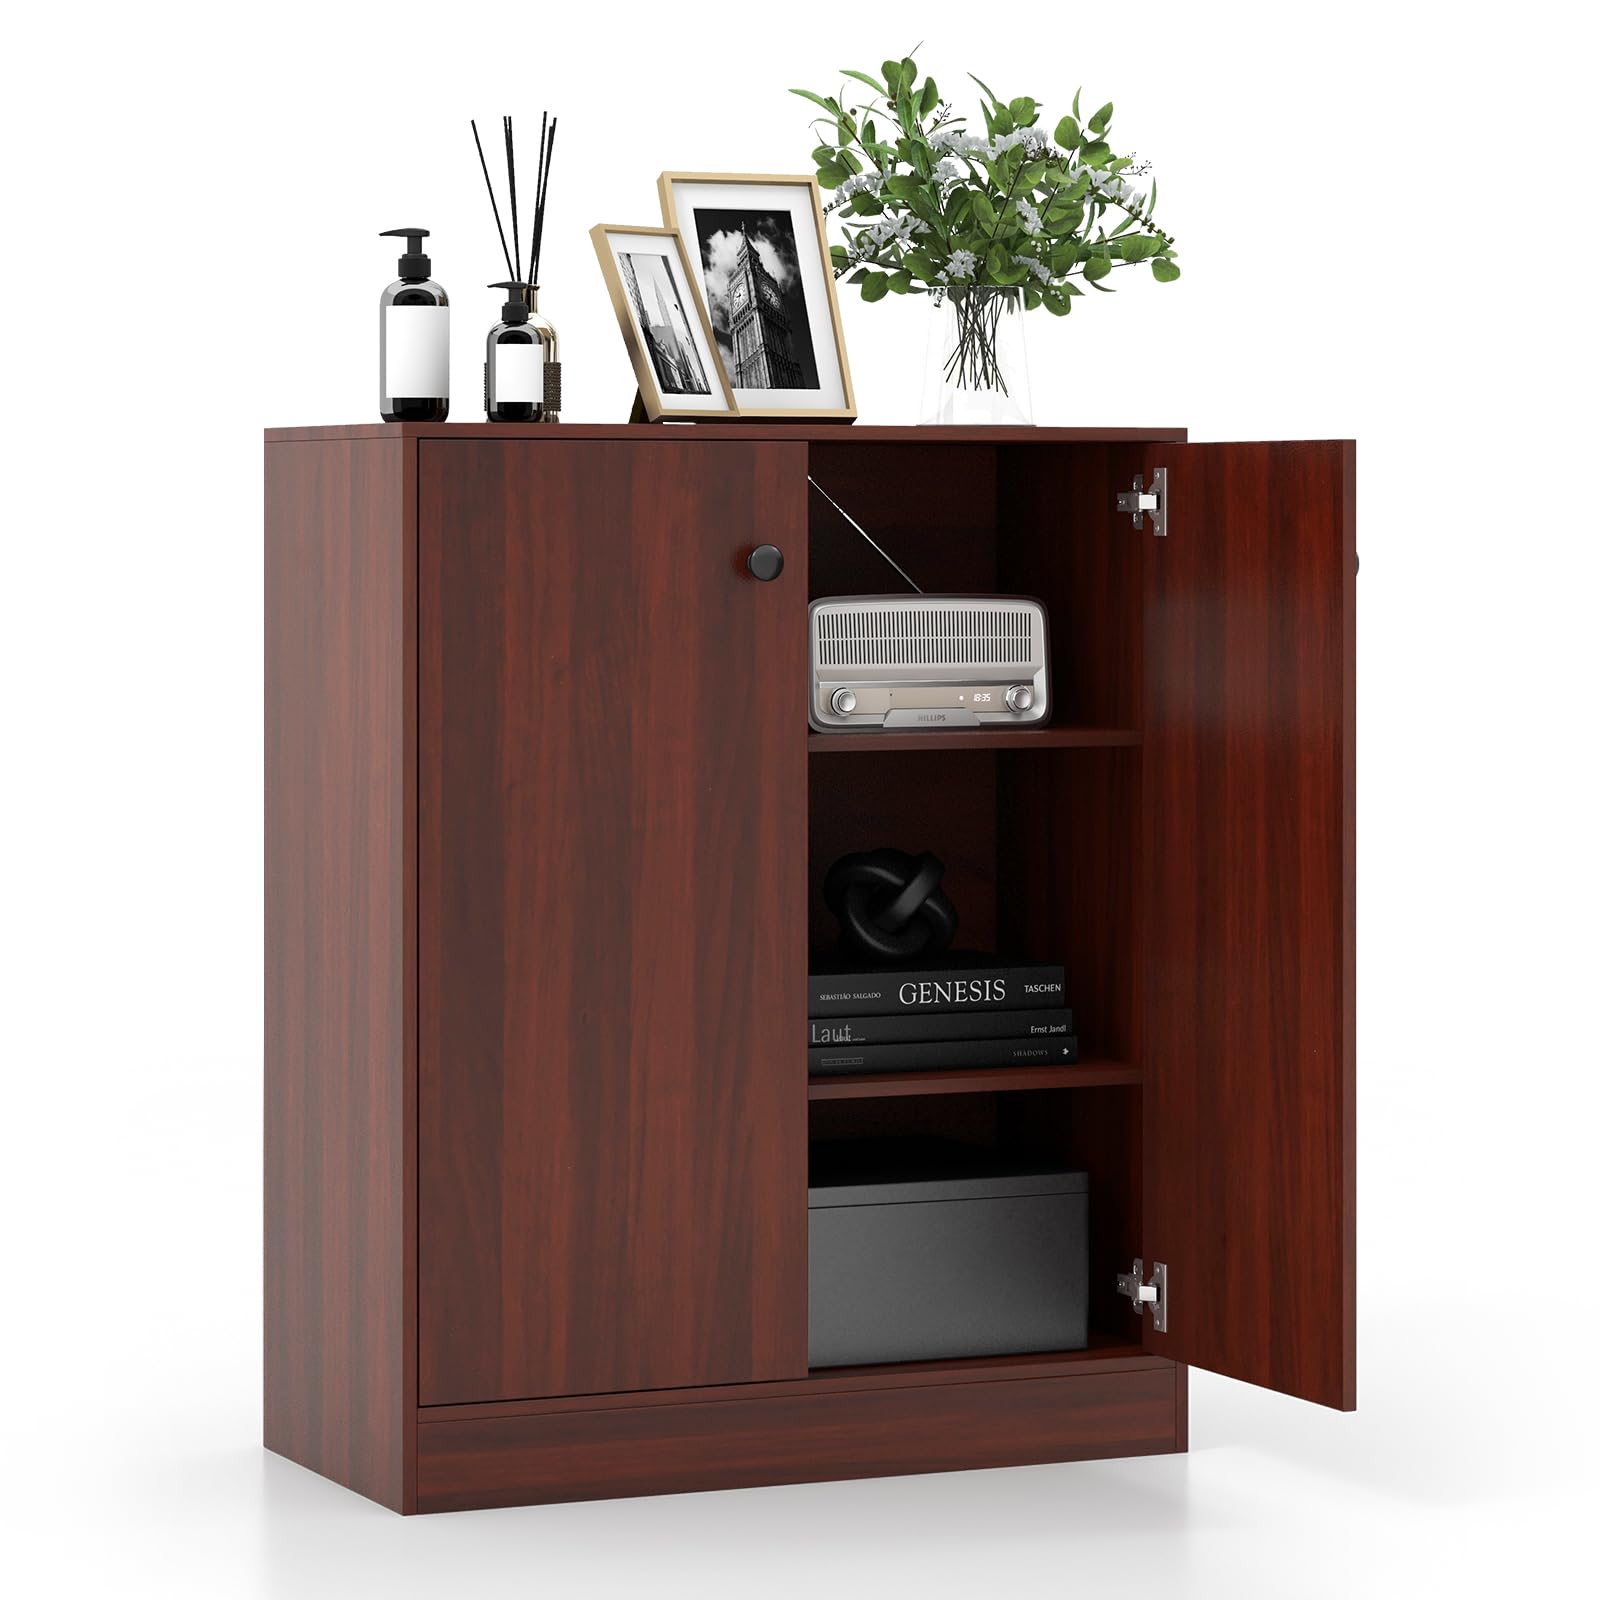 Giantex 2 Door Storage Base Cabinet - Freestanding Floor Cabinet with 3-Tier Shelf